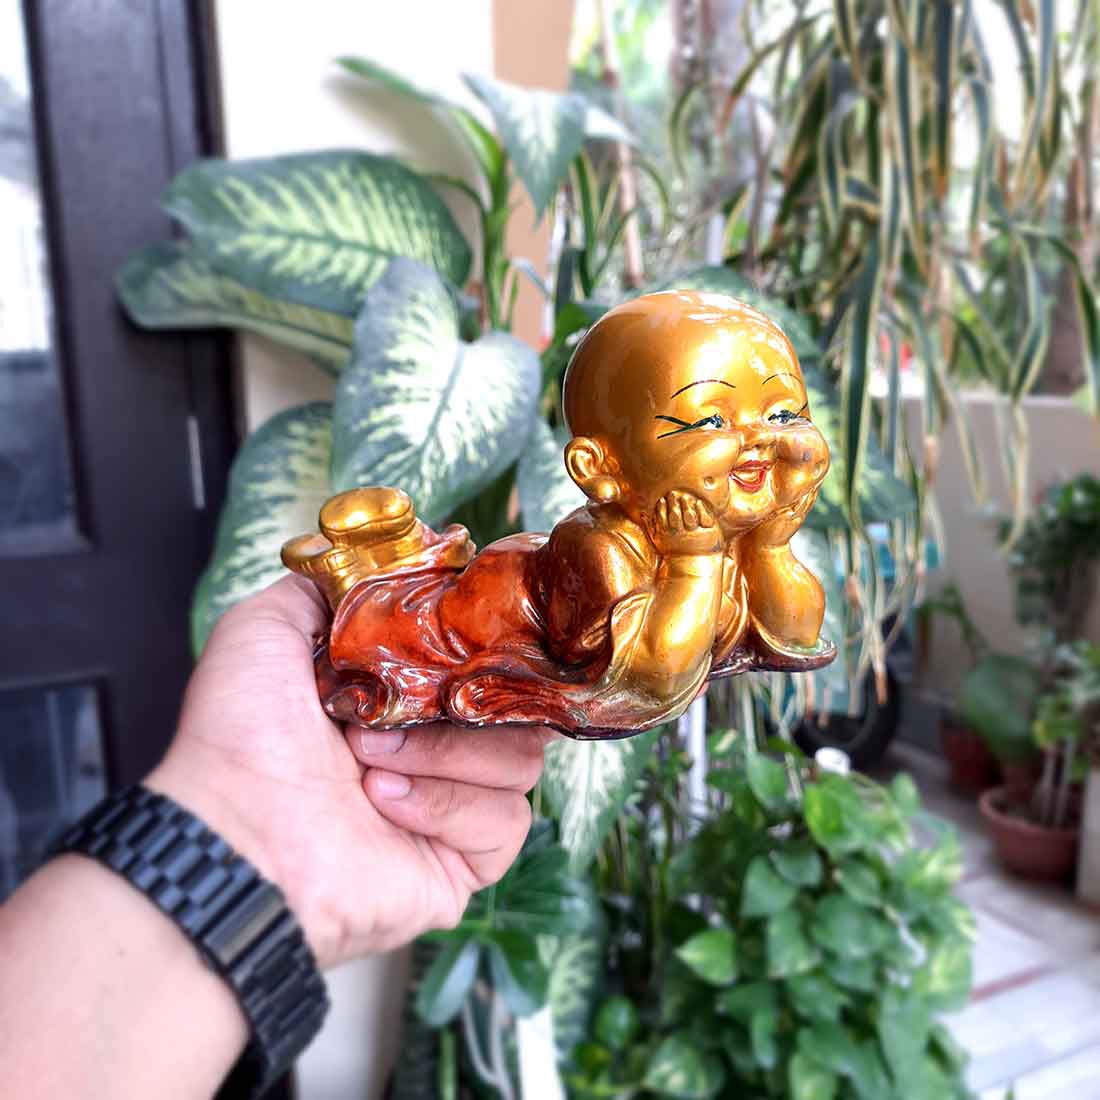 Baby Monk Showpiece - for Home  & Garden Decor - 6 Inch - ApkaMart